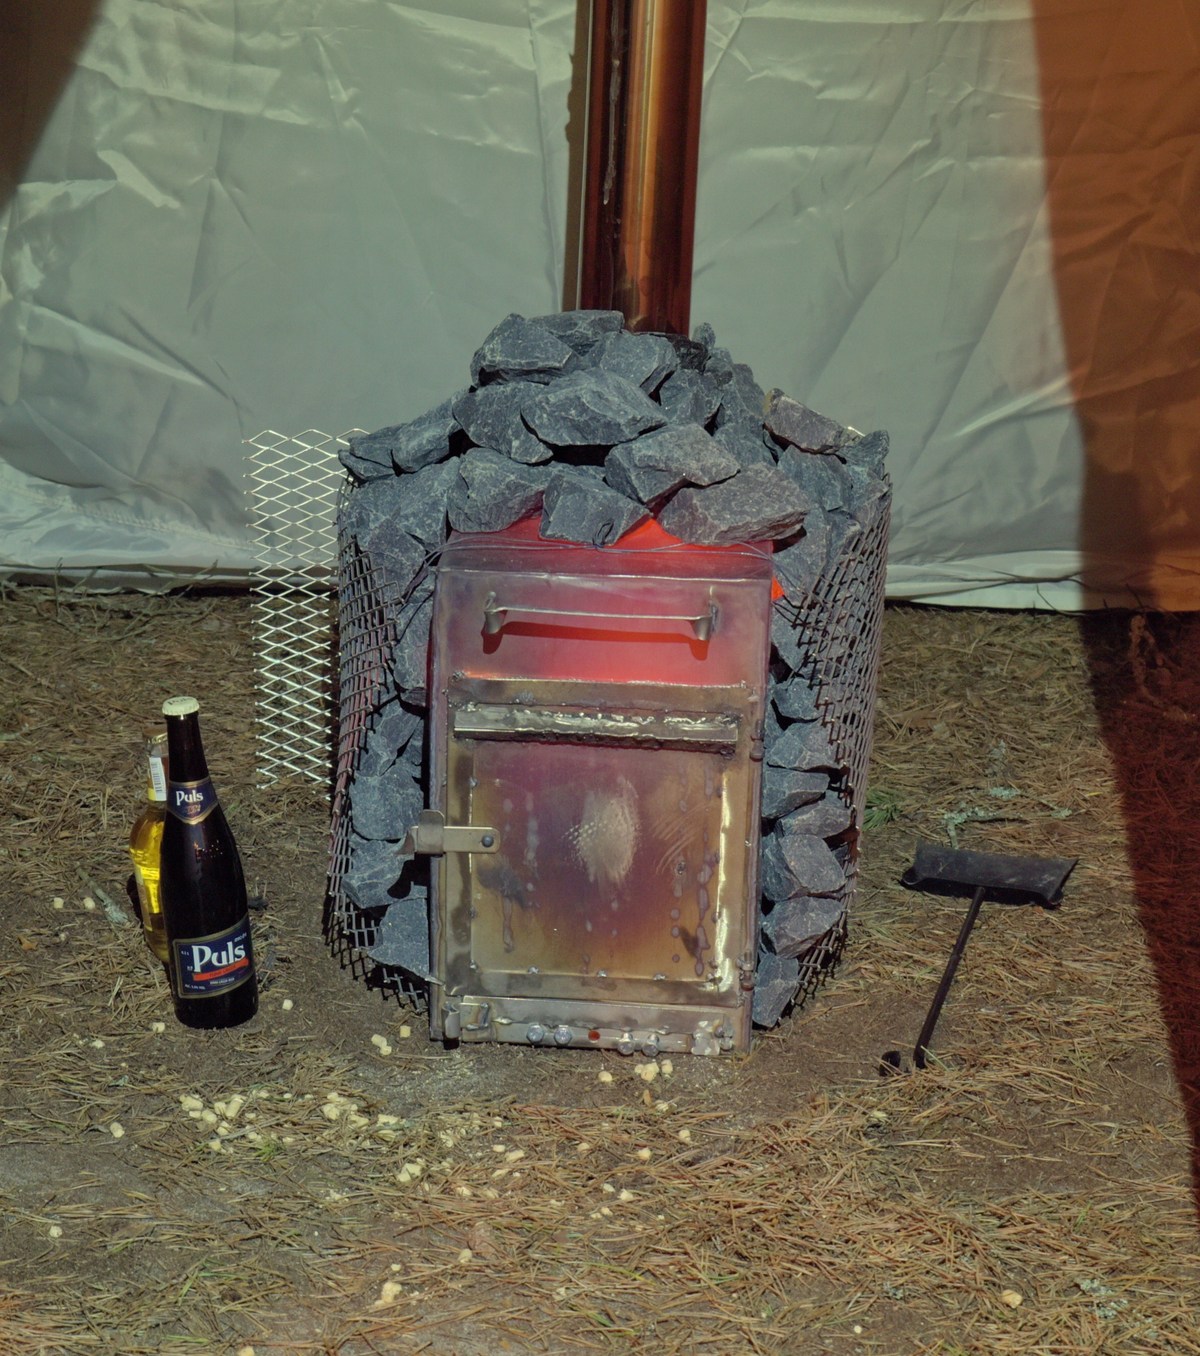 Самодельная печка с тёмным пивом Puls. Новый год на природе, Палдиски.